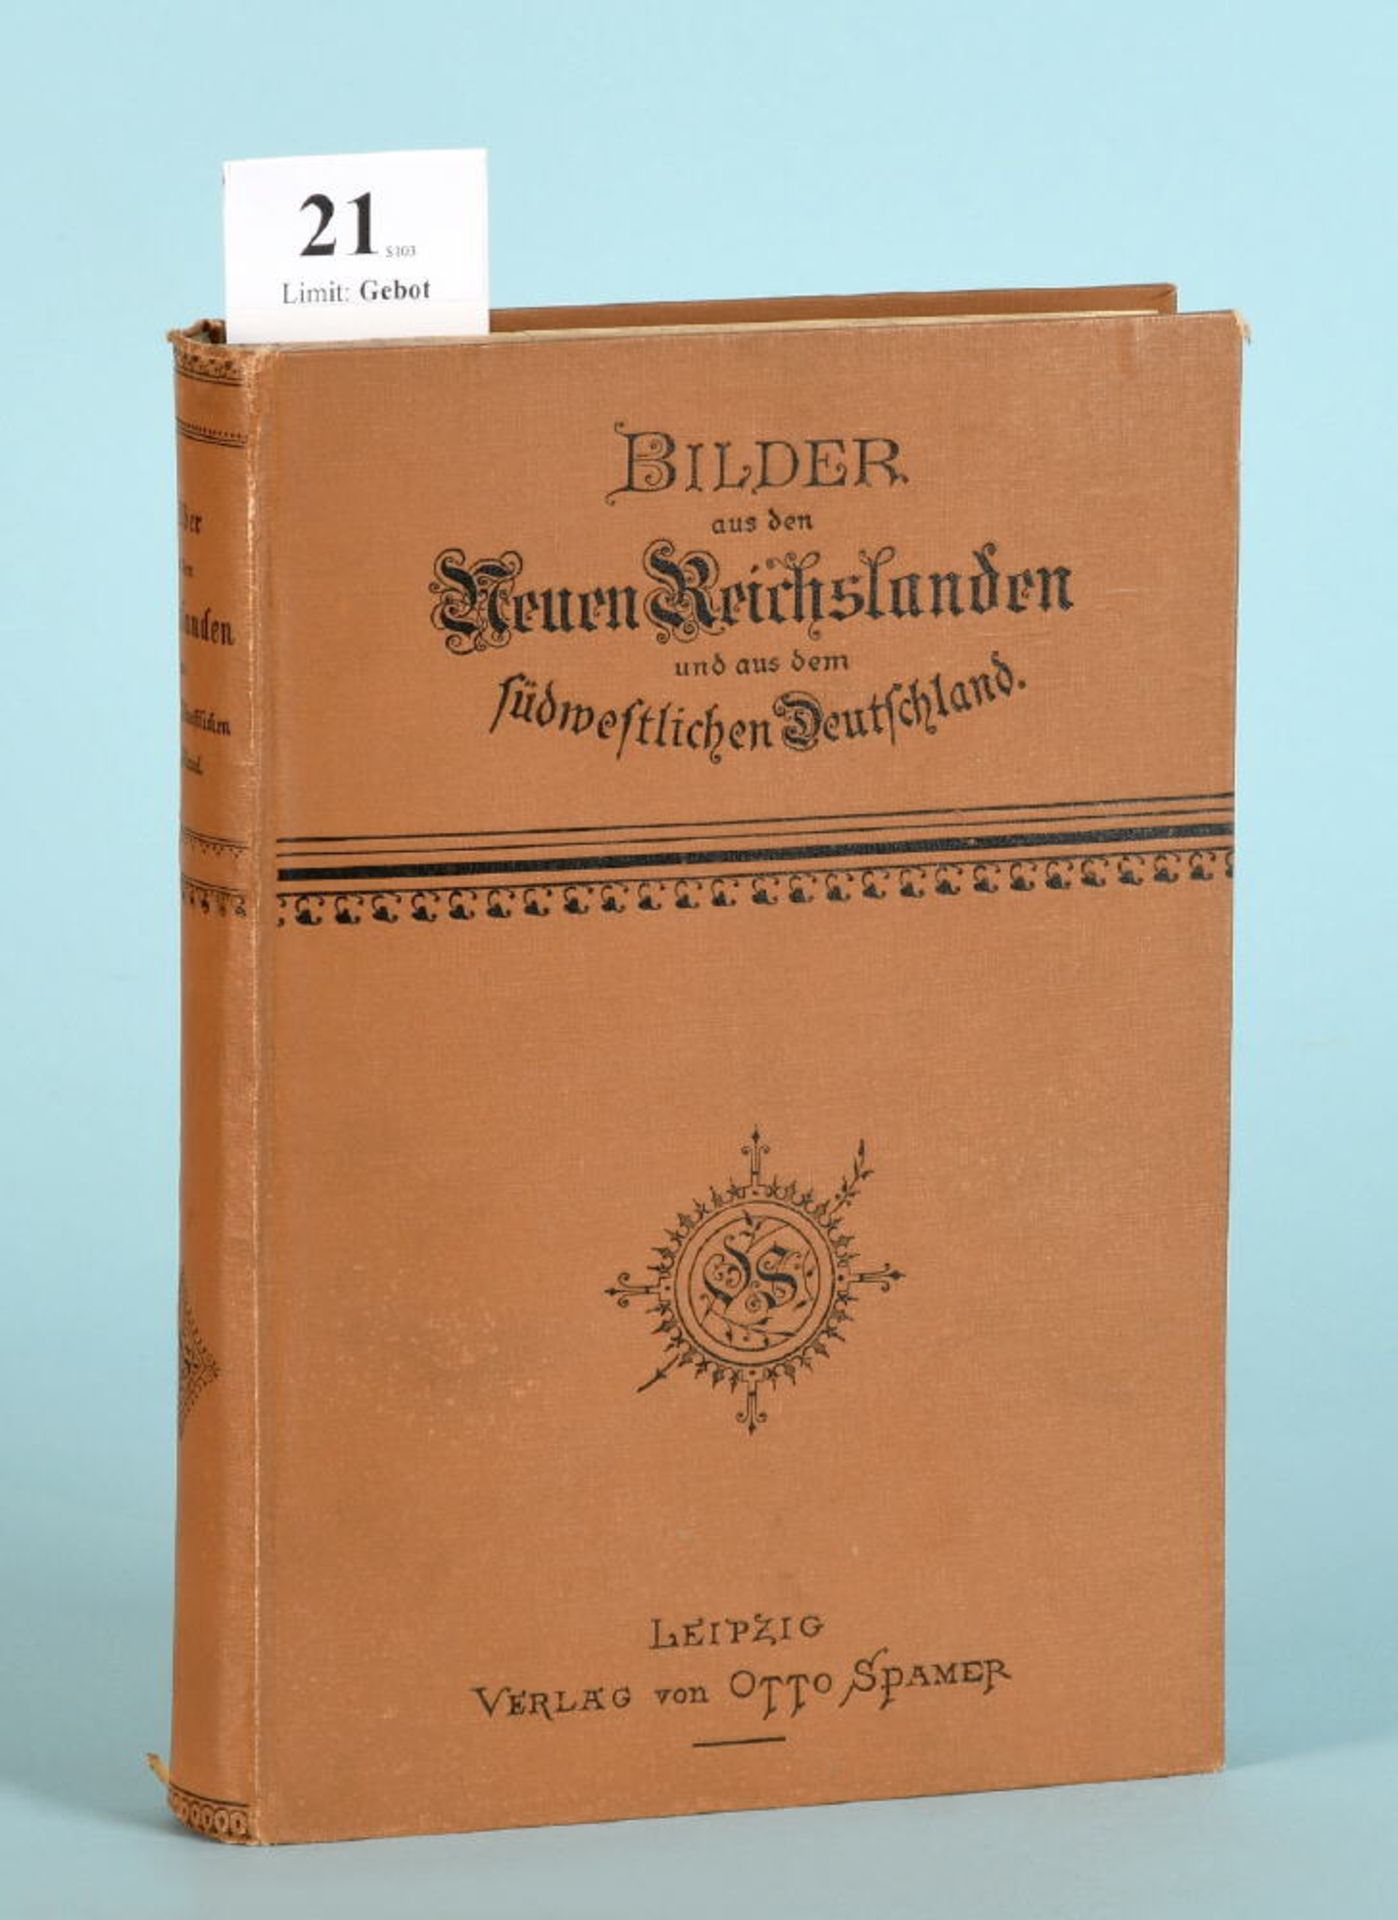 Albrecht, Dr. u.a. "Bilder aus den Neuen Reichslanden und aus...""...dem südwestlichen Deutschland",